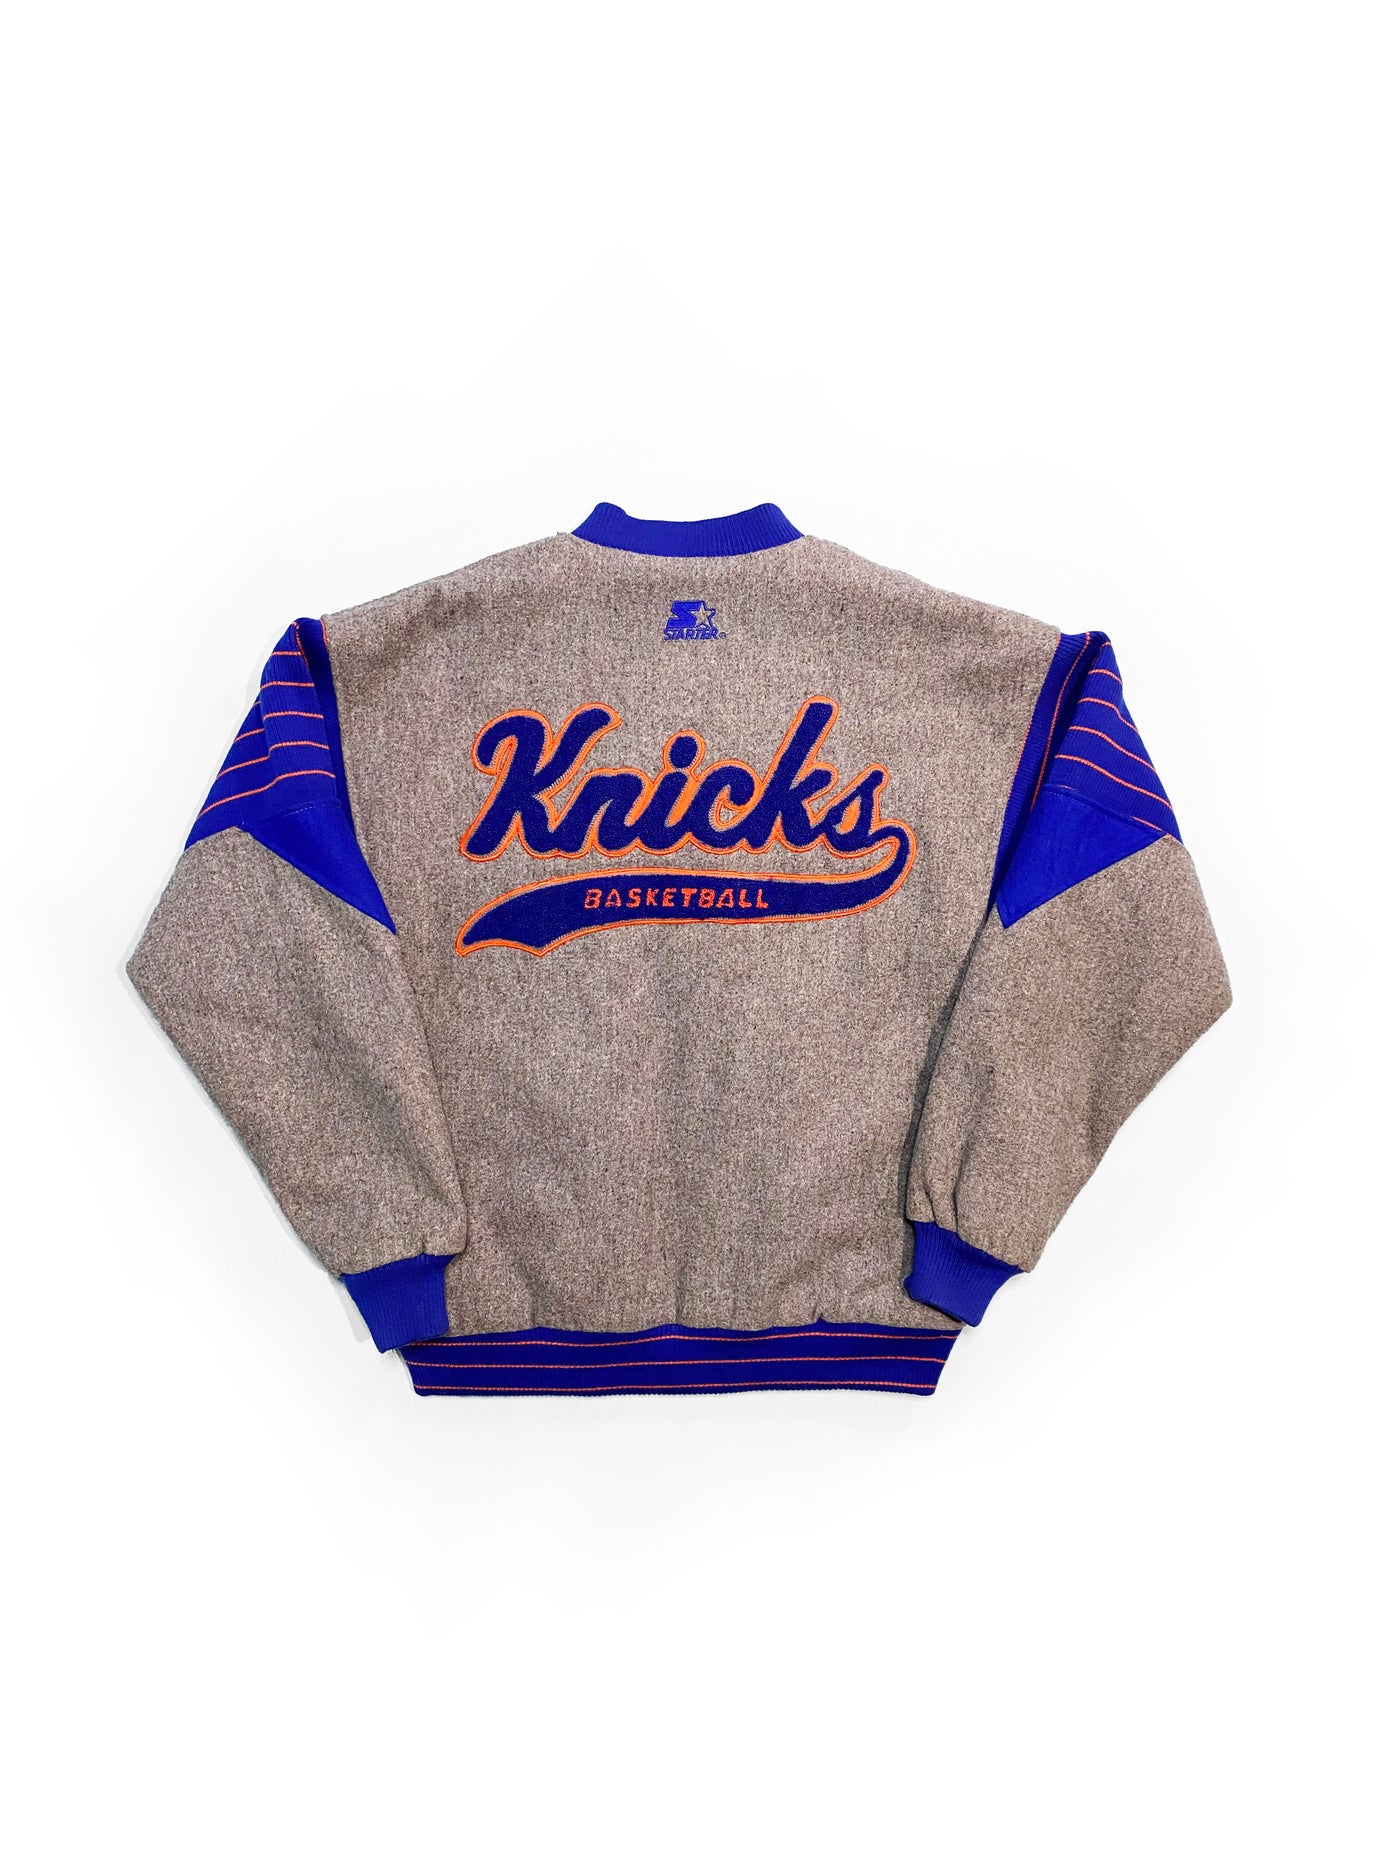 Vintage 90s New York Knicks Varsity Style Starter Jacket